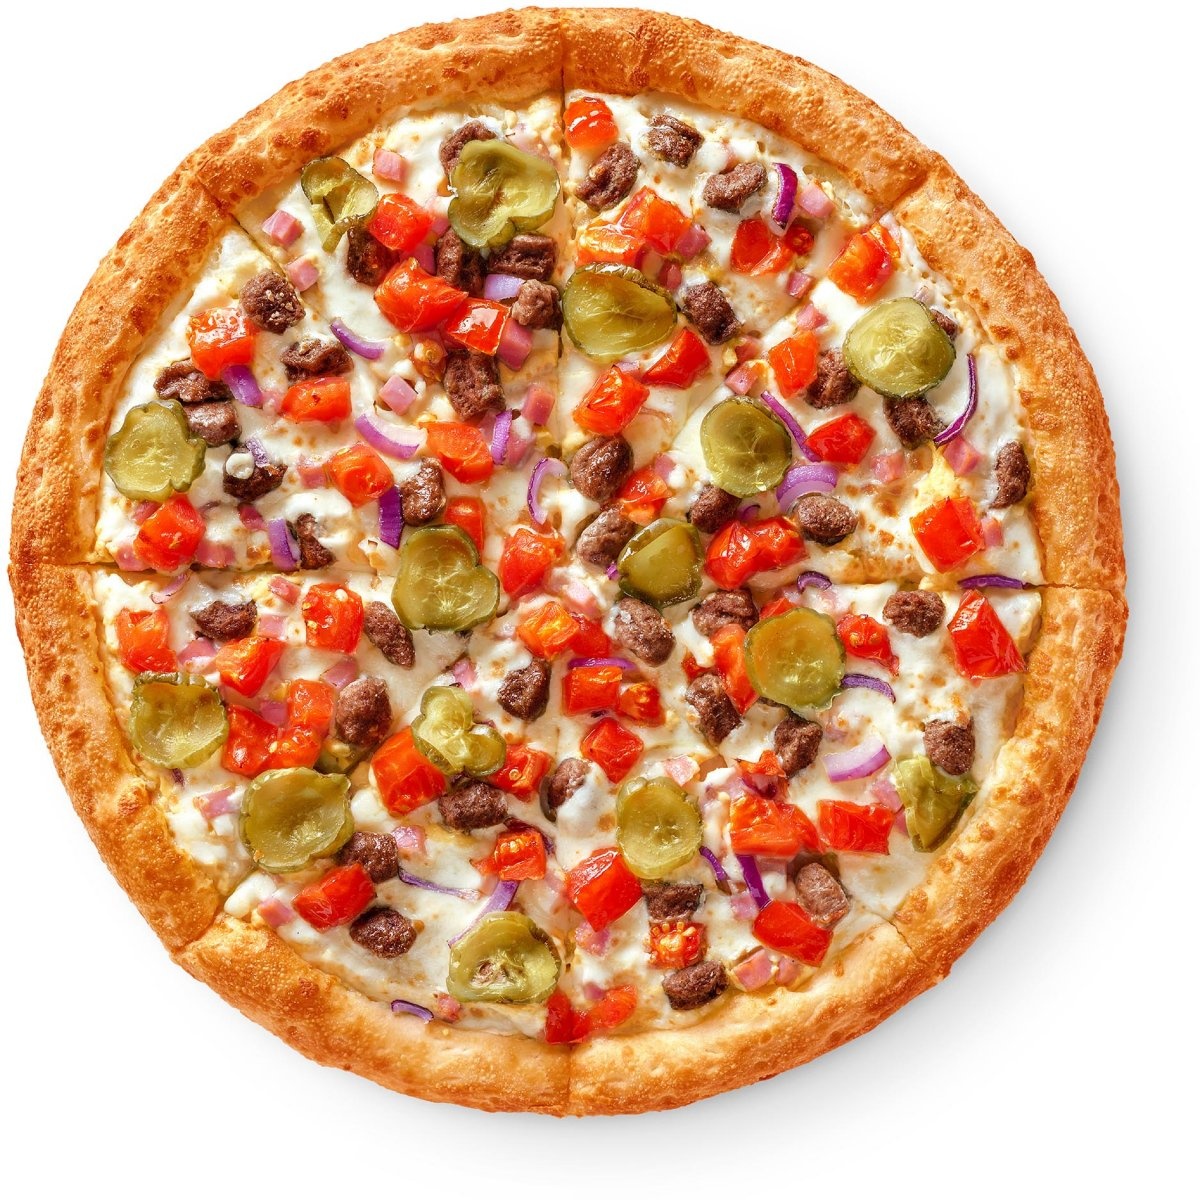 состав пиццы пепперони в додо фото 75